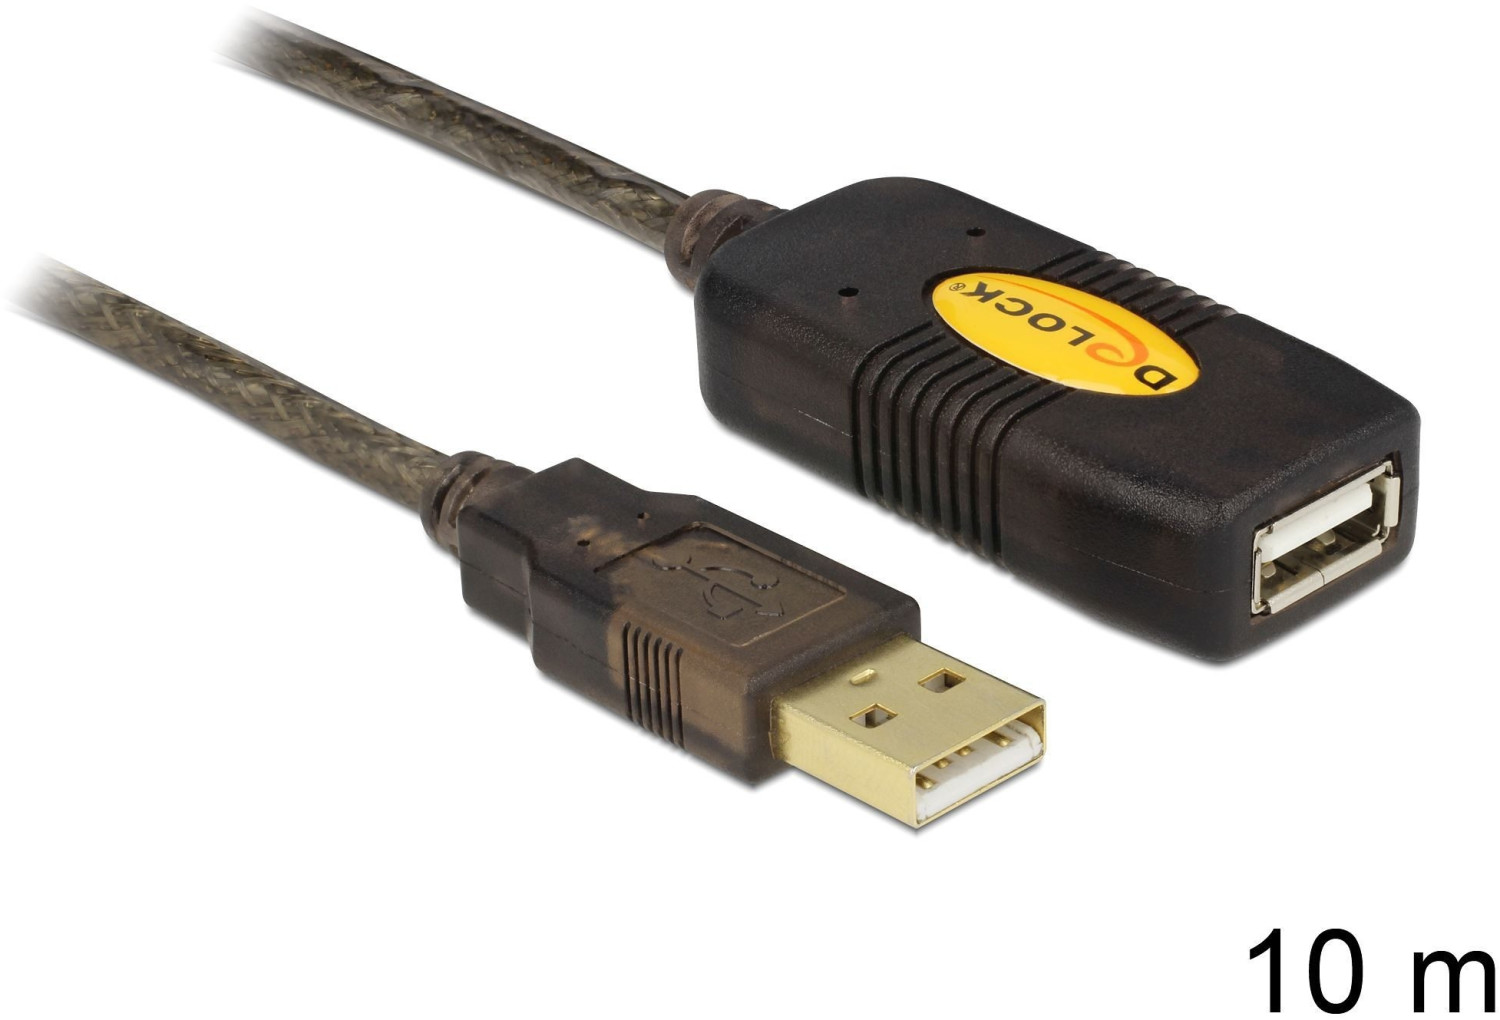 Logitech Strong USB Cable 10m (939-001799) au meilleur prix sur